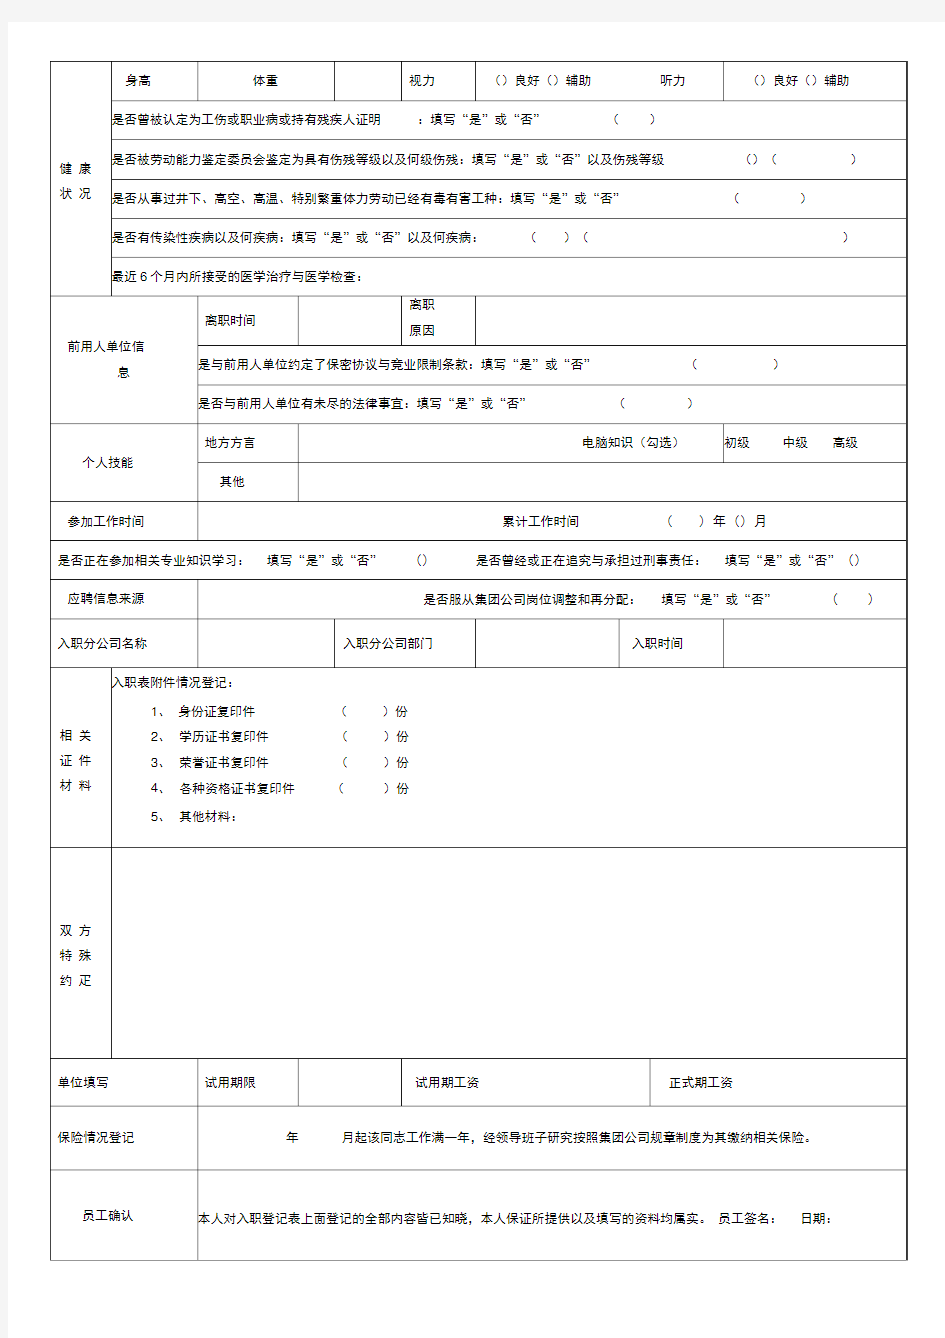 【范本】员工入职登记表(正式表)